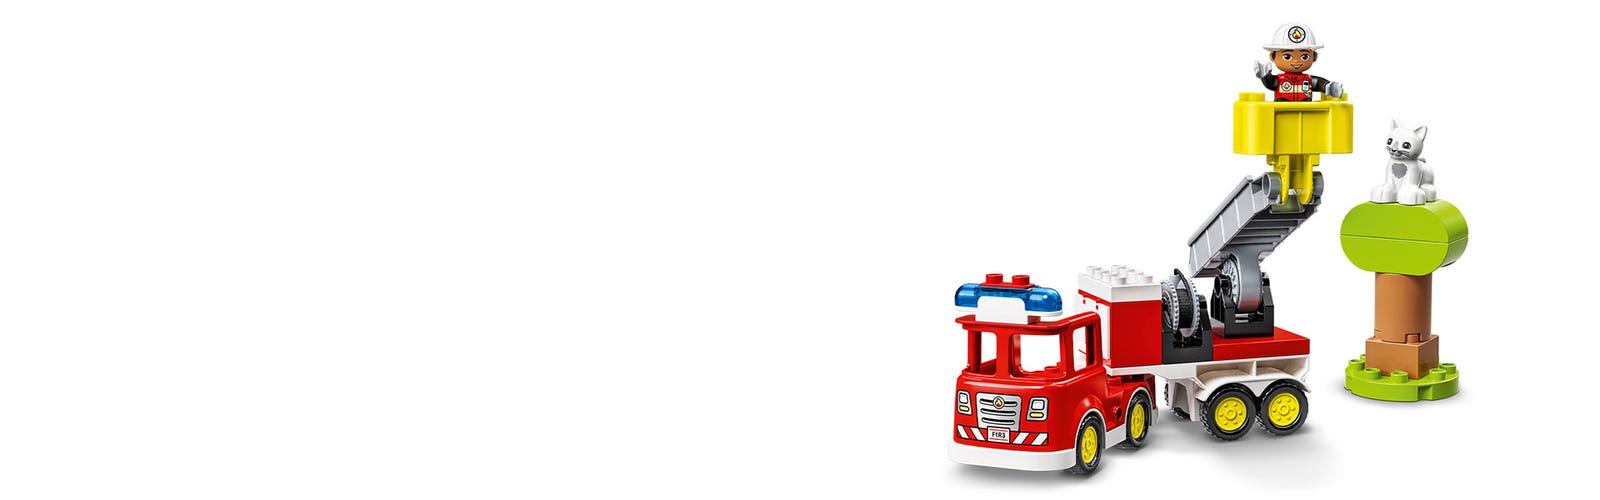 Le camion de pompiers LEGO DUPLO 10969 - La Grande Récré